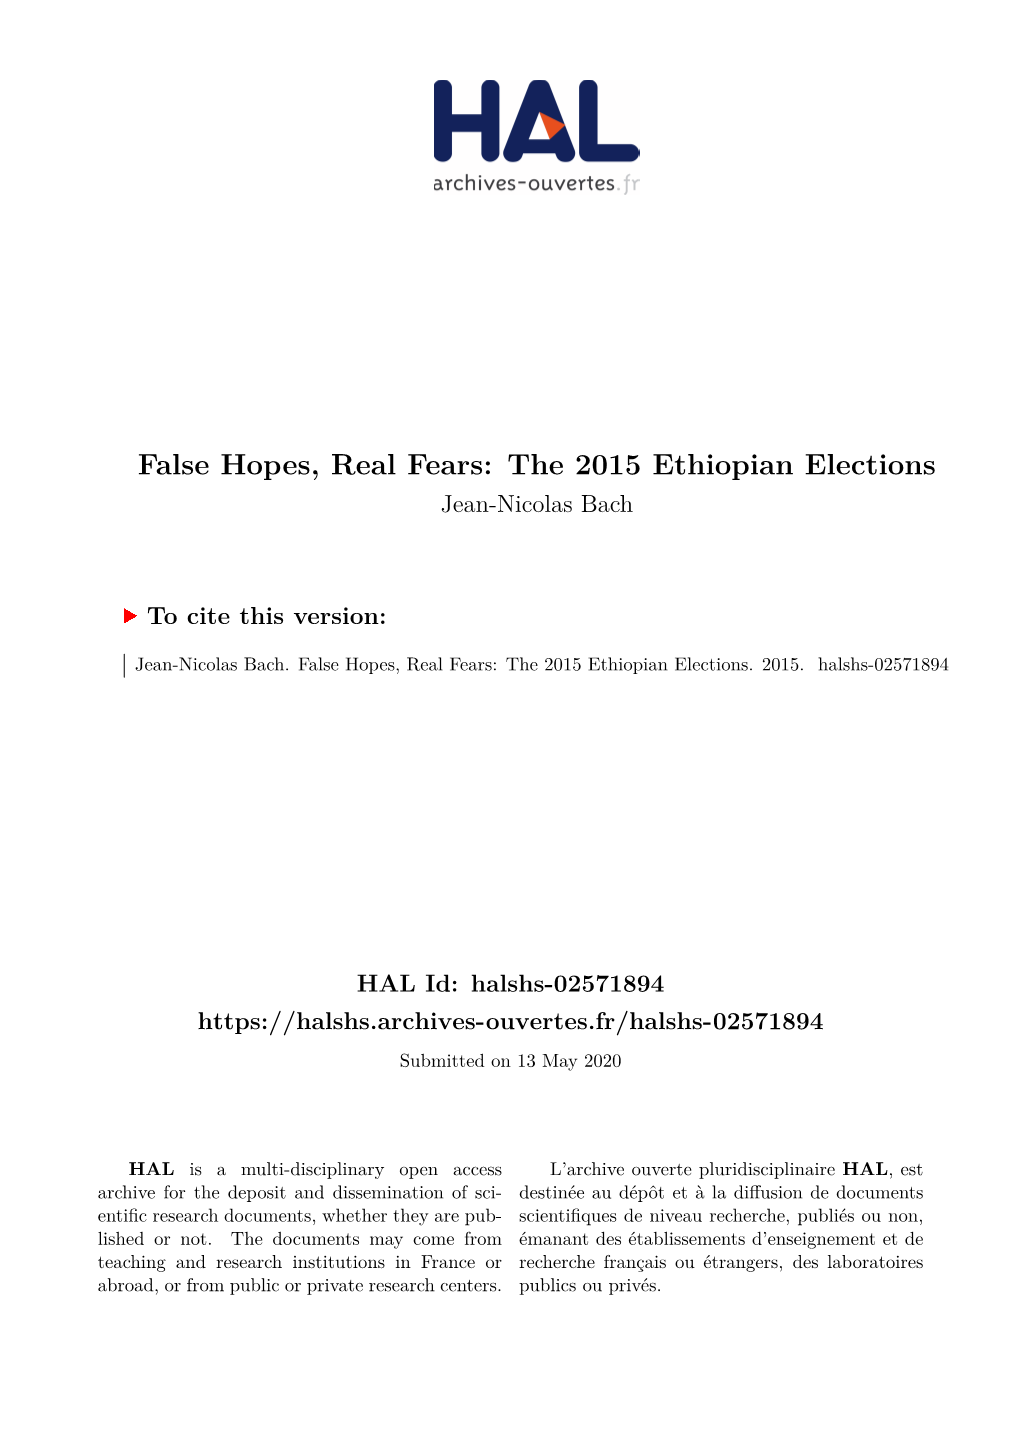 The 2015 Ethiopian Elections Jean-Nicolas Bach